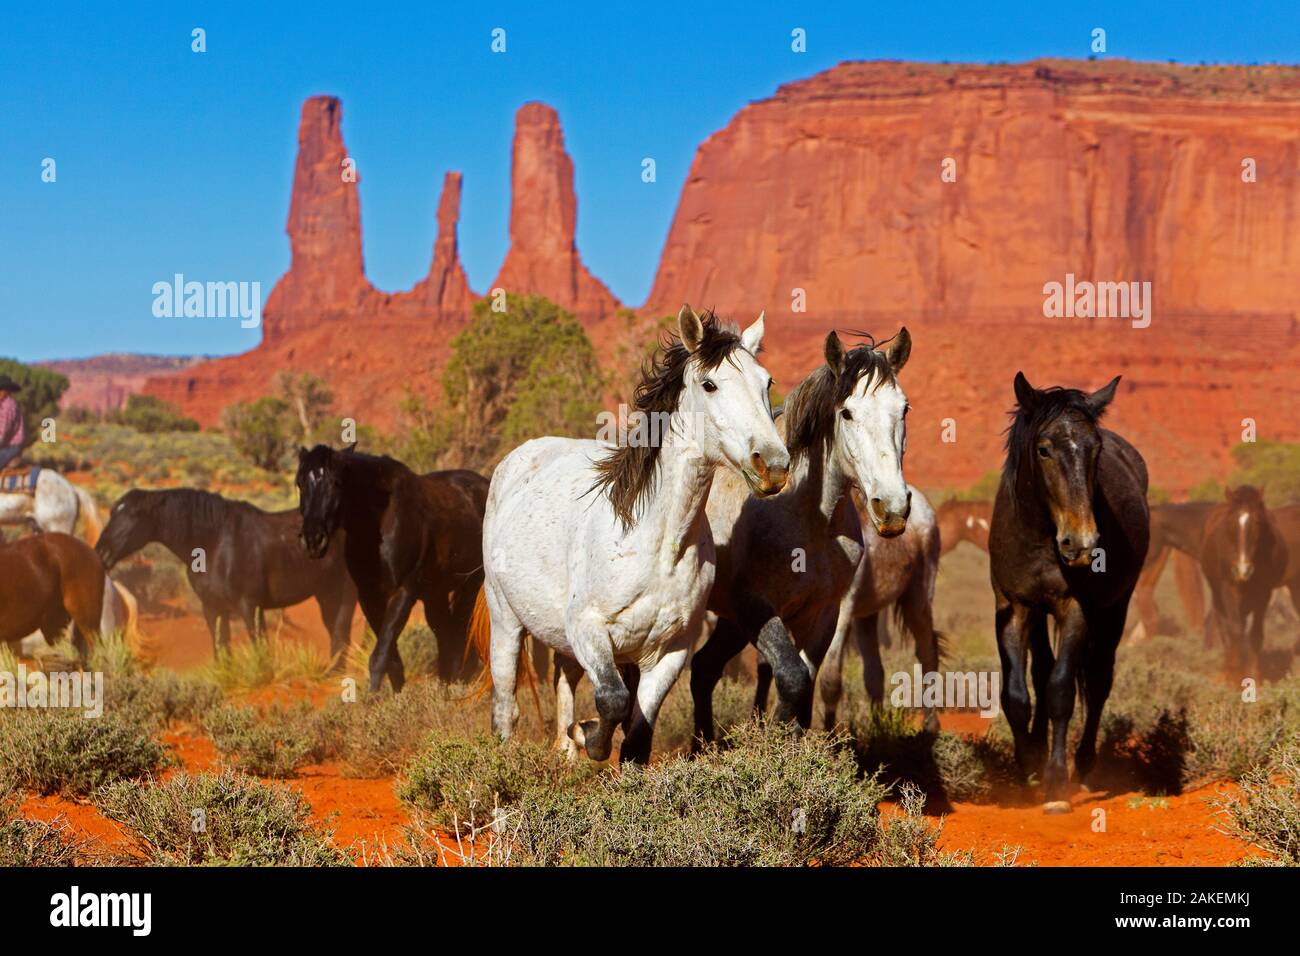 Les chevaux sauvages, Monument Valley Navajo Tribal Park, réserve, Utah, USA. Avril. Banque D'Images